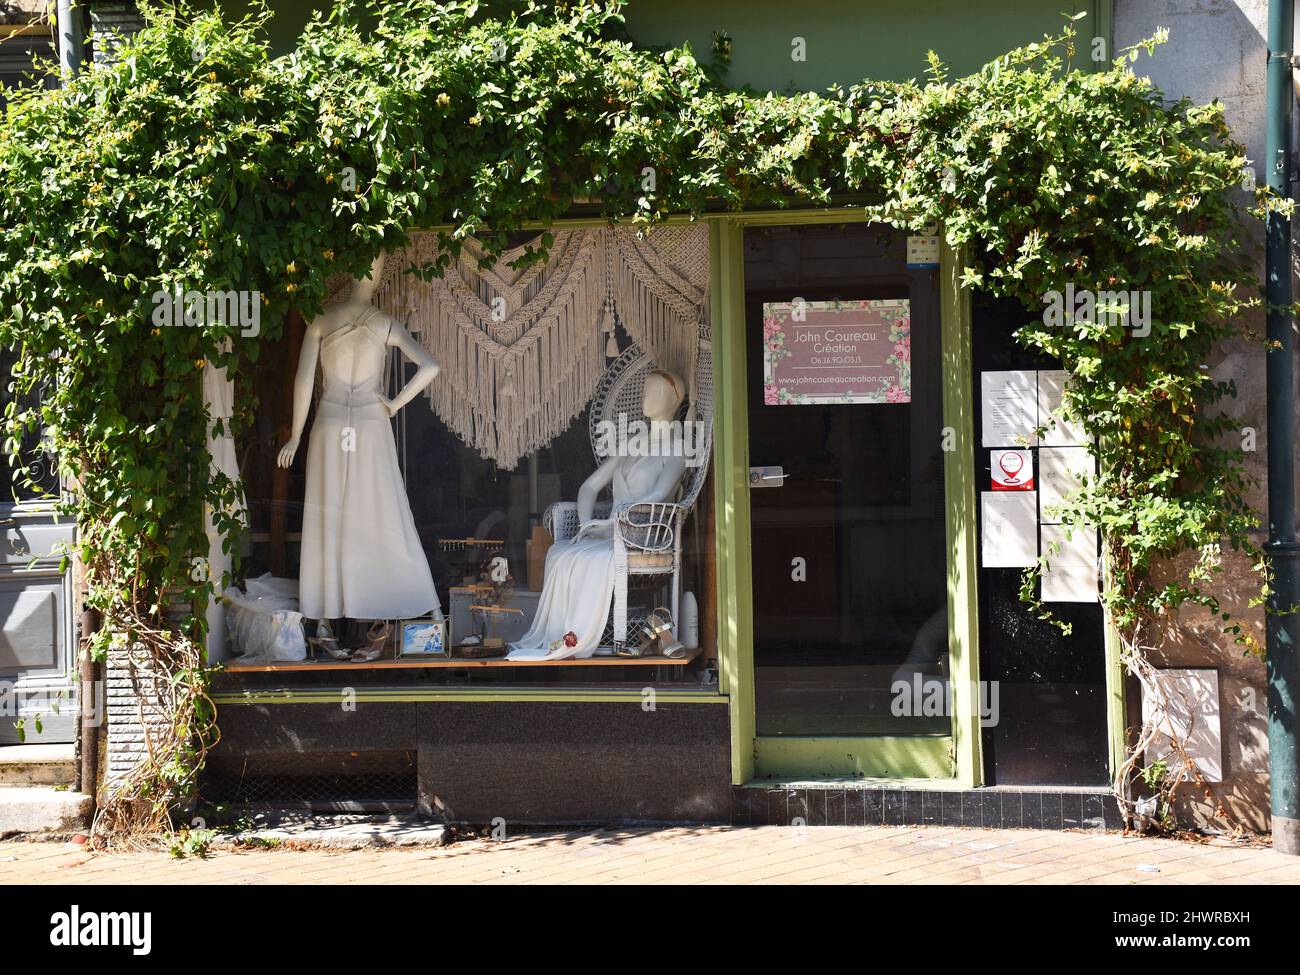 La hermosa ventana frontal de la tienda nupcial John Coureau Création en Burdeos, Francia, enmarcada en madreselva Foto de stock